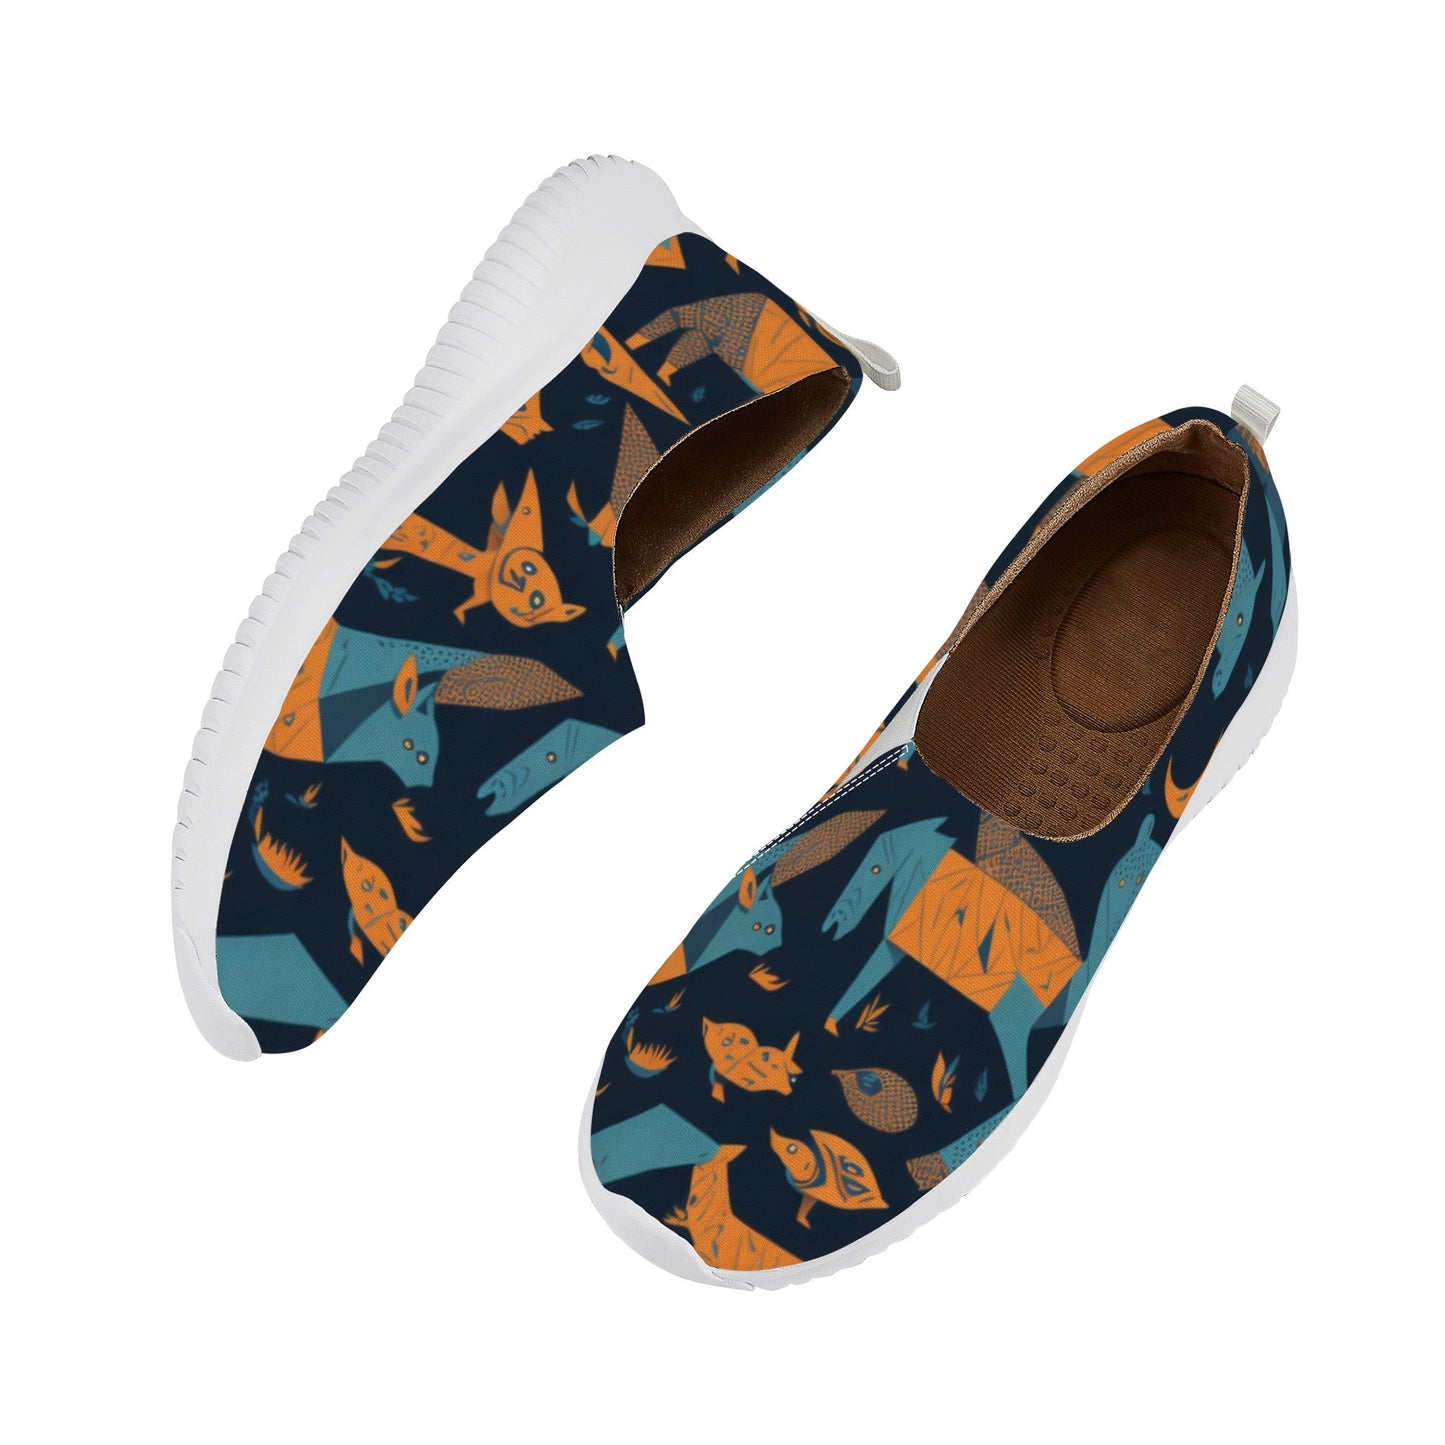 Designer Women's Slip On Casual Shoes-LQ X1 Colloid Colors 